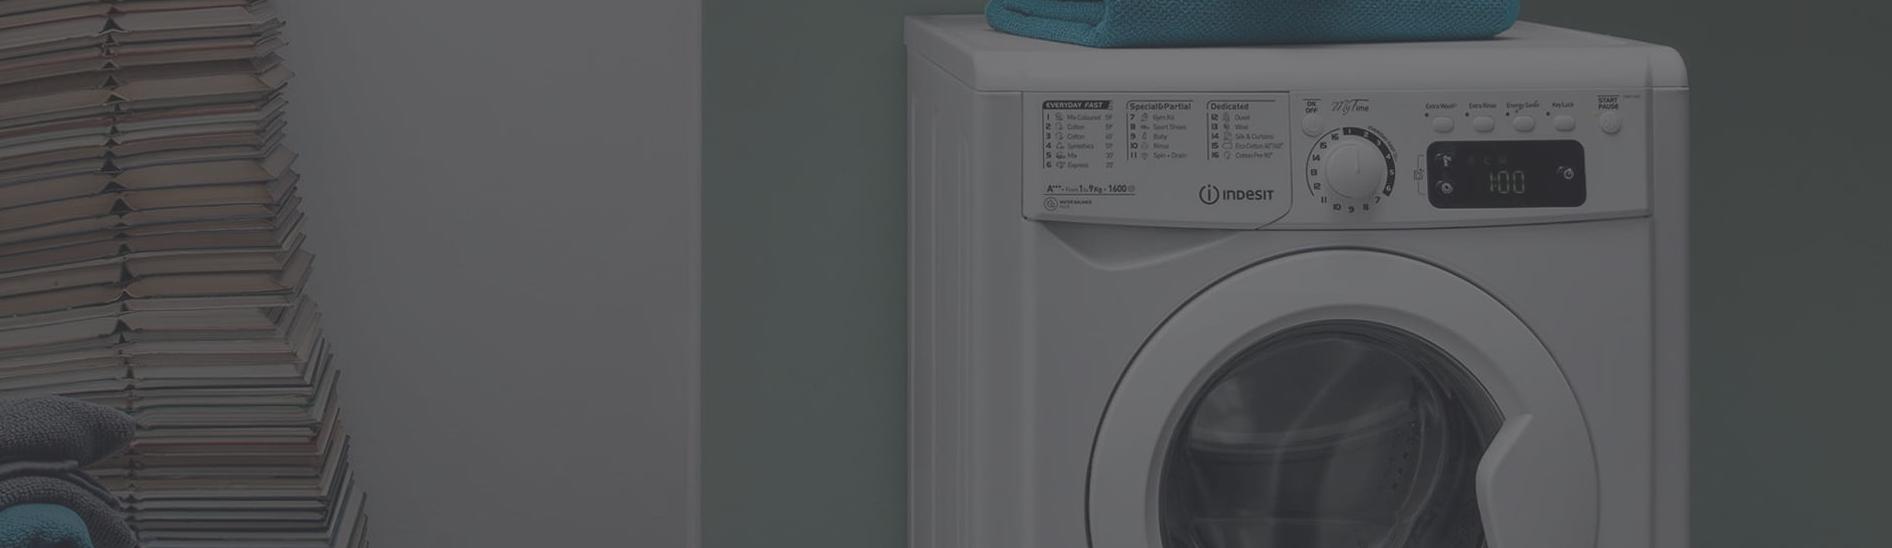 Ремонт стиральных машин Indesit: частые поломки, вызов мастера, способы продления срока службы техники